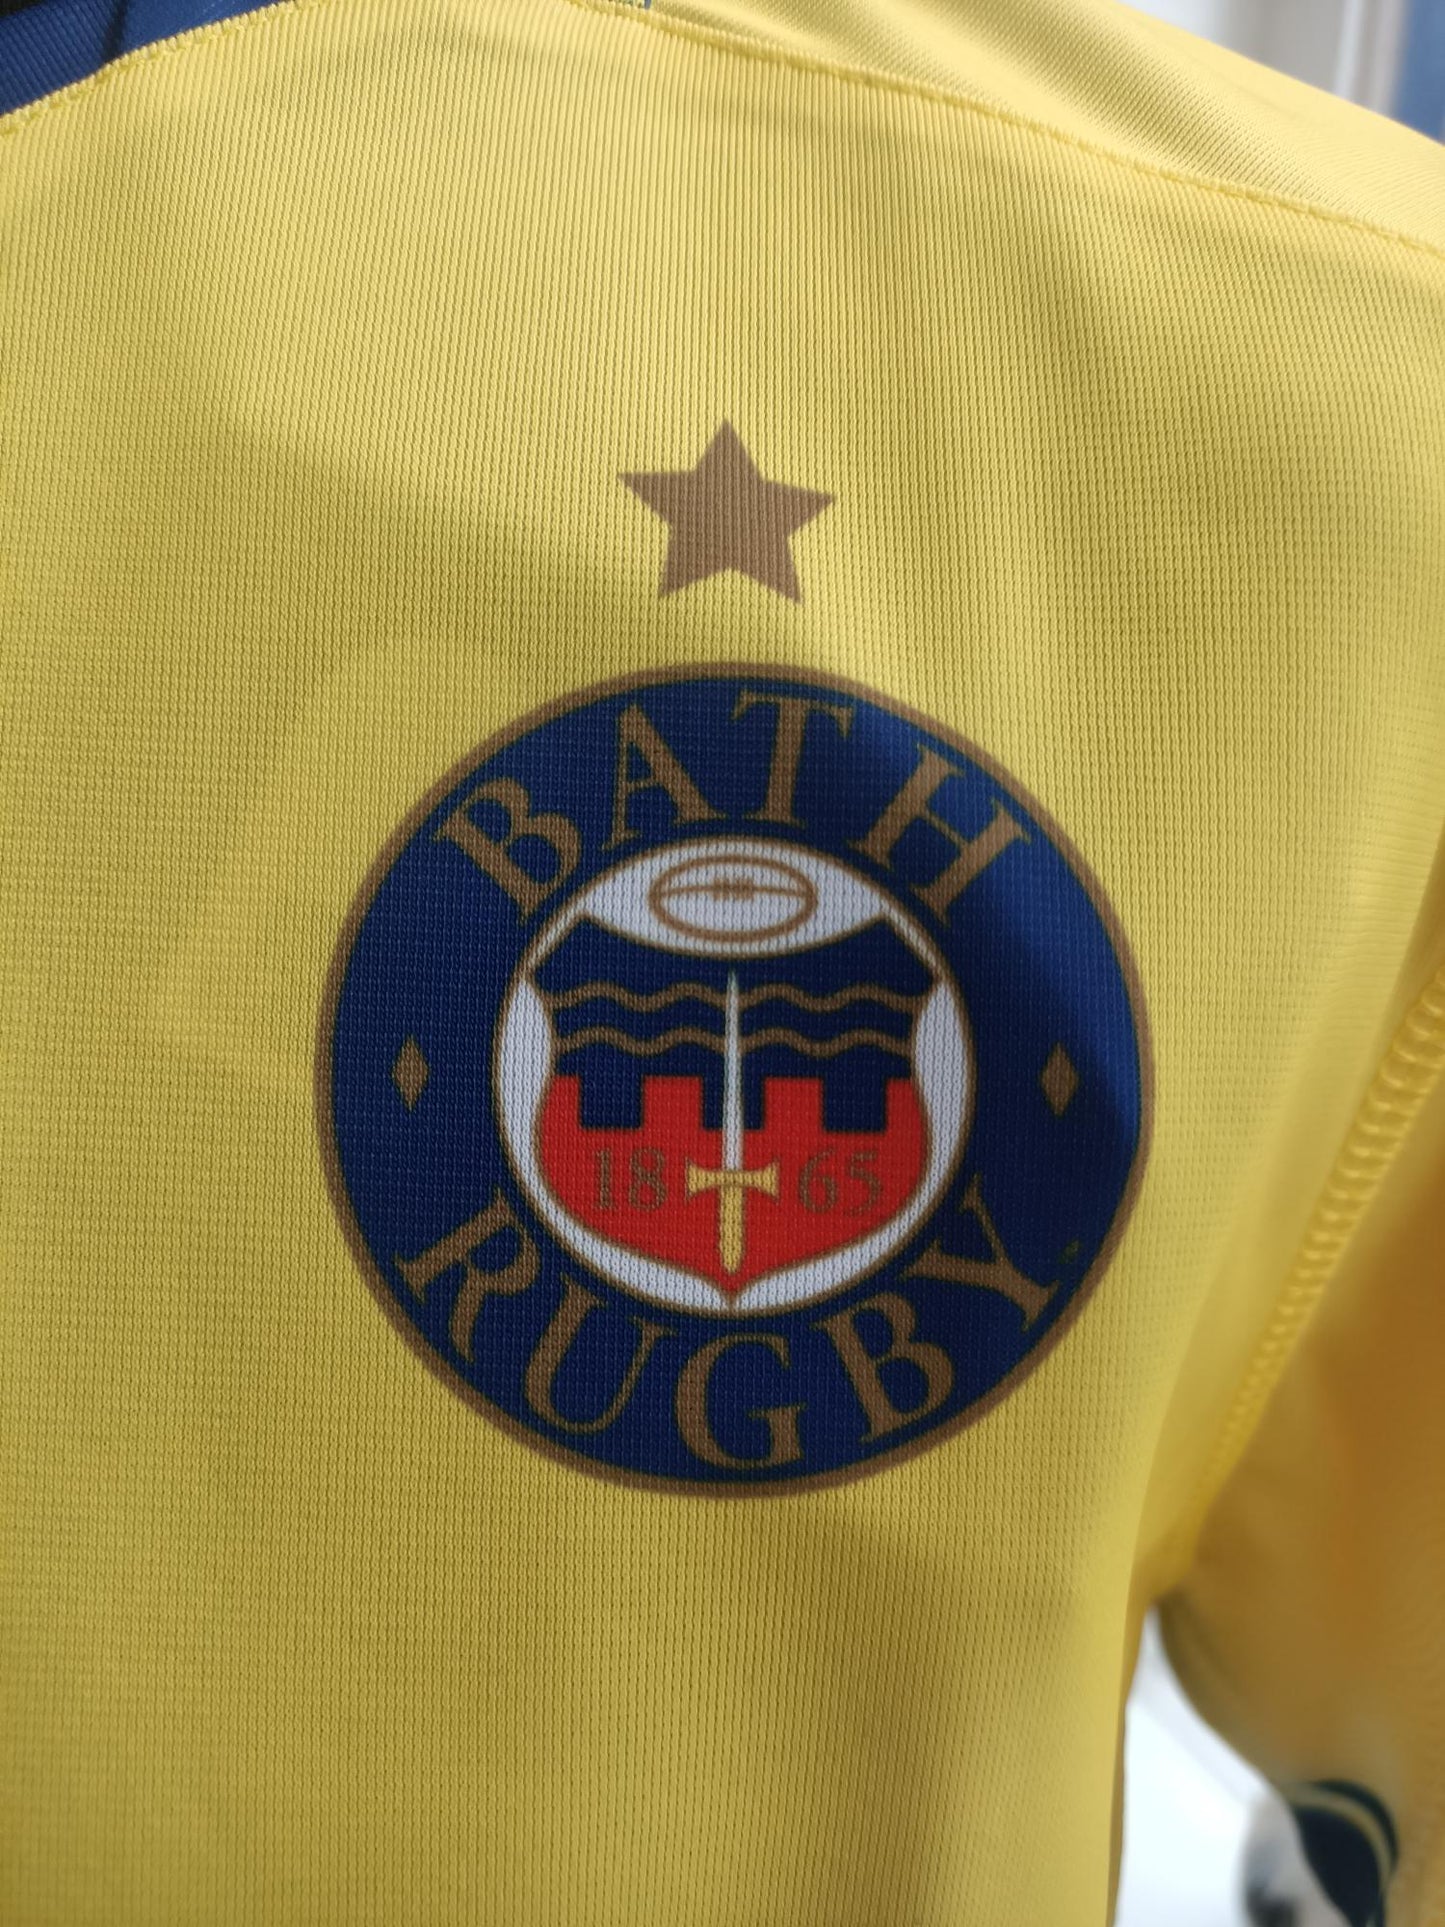 Bath Rugby Union shirt 2022-2023 season BNWT